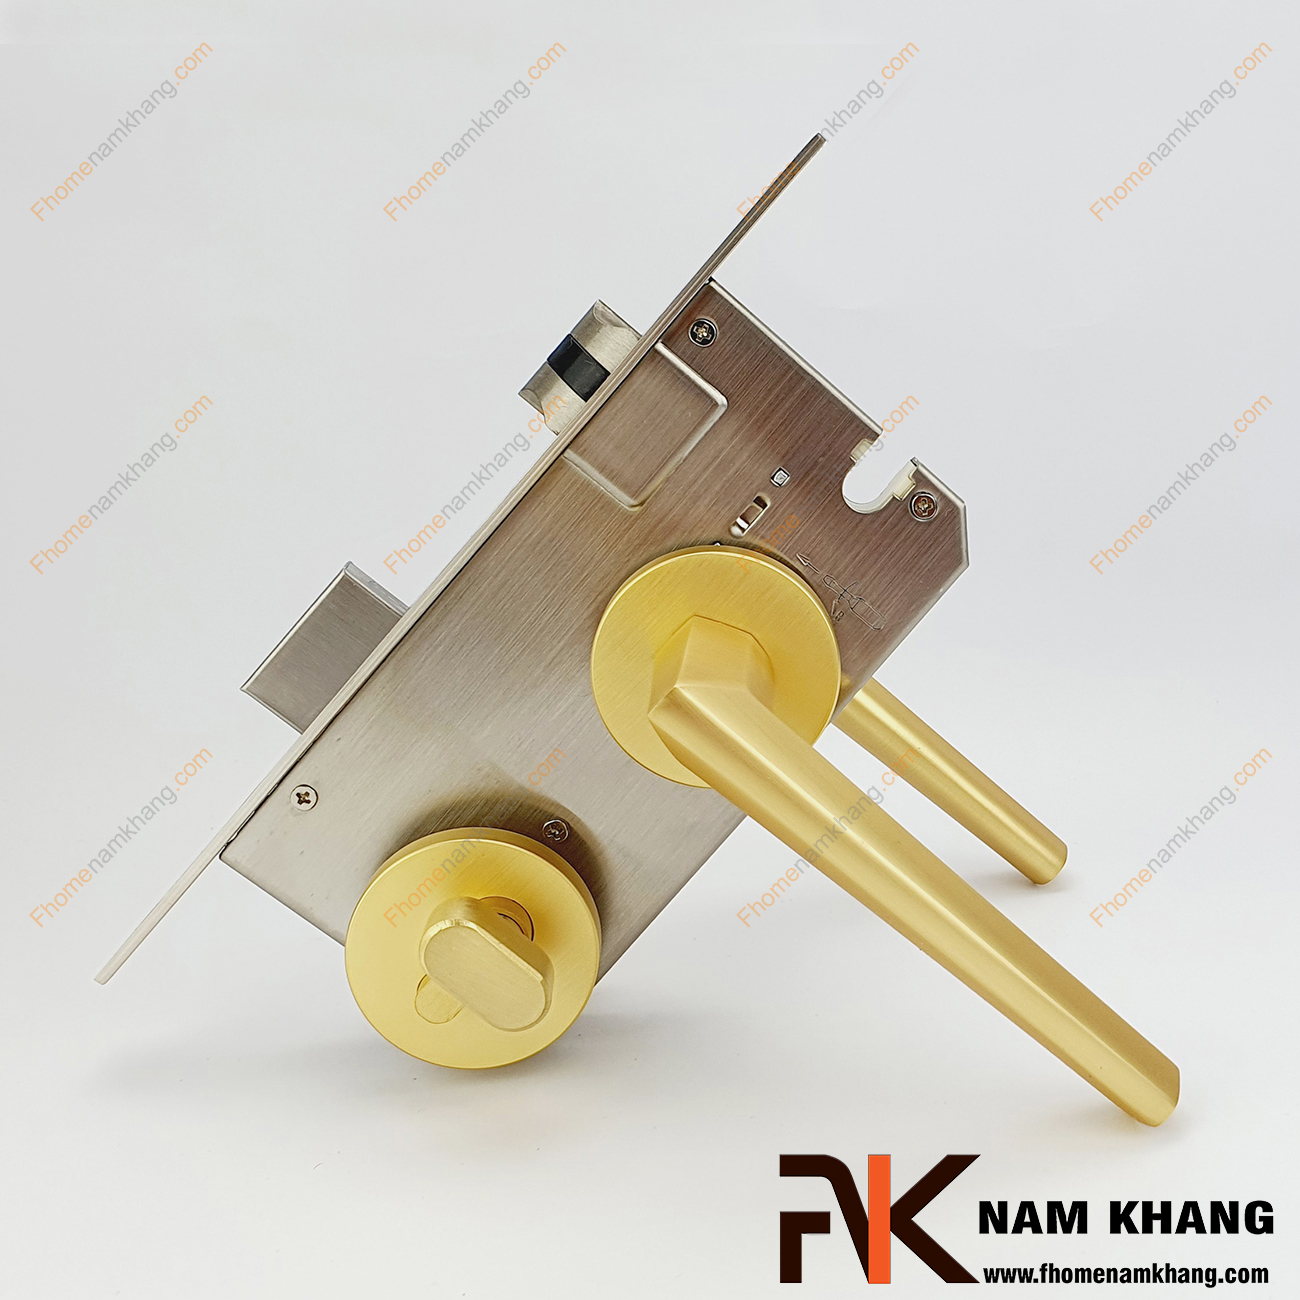 Khóa cửa phân thể bằng hợp kim dạng trơn NK573-VM gồm 1 đầu vặn 1 đầu chìa chuyên dùng cho cửa phòng, cửa ban công, cửa nhà vệ sinh,...